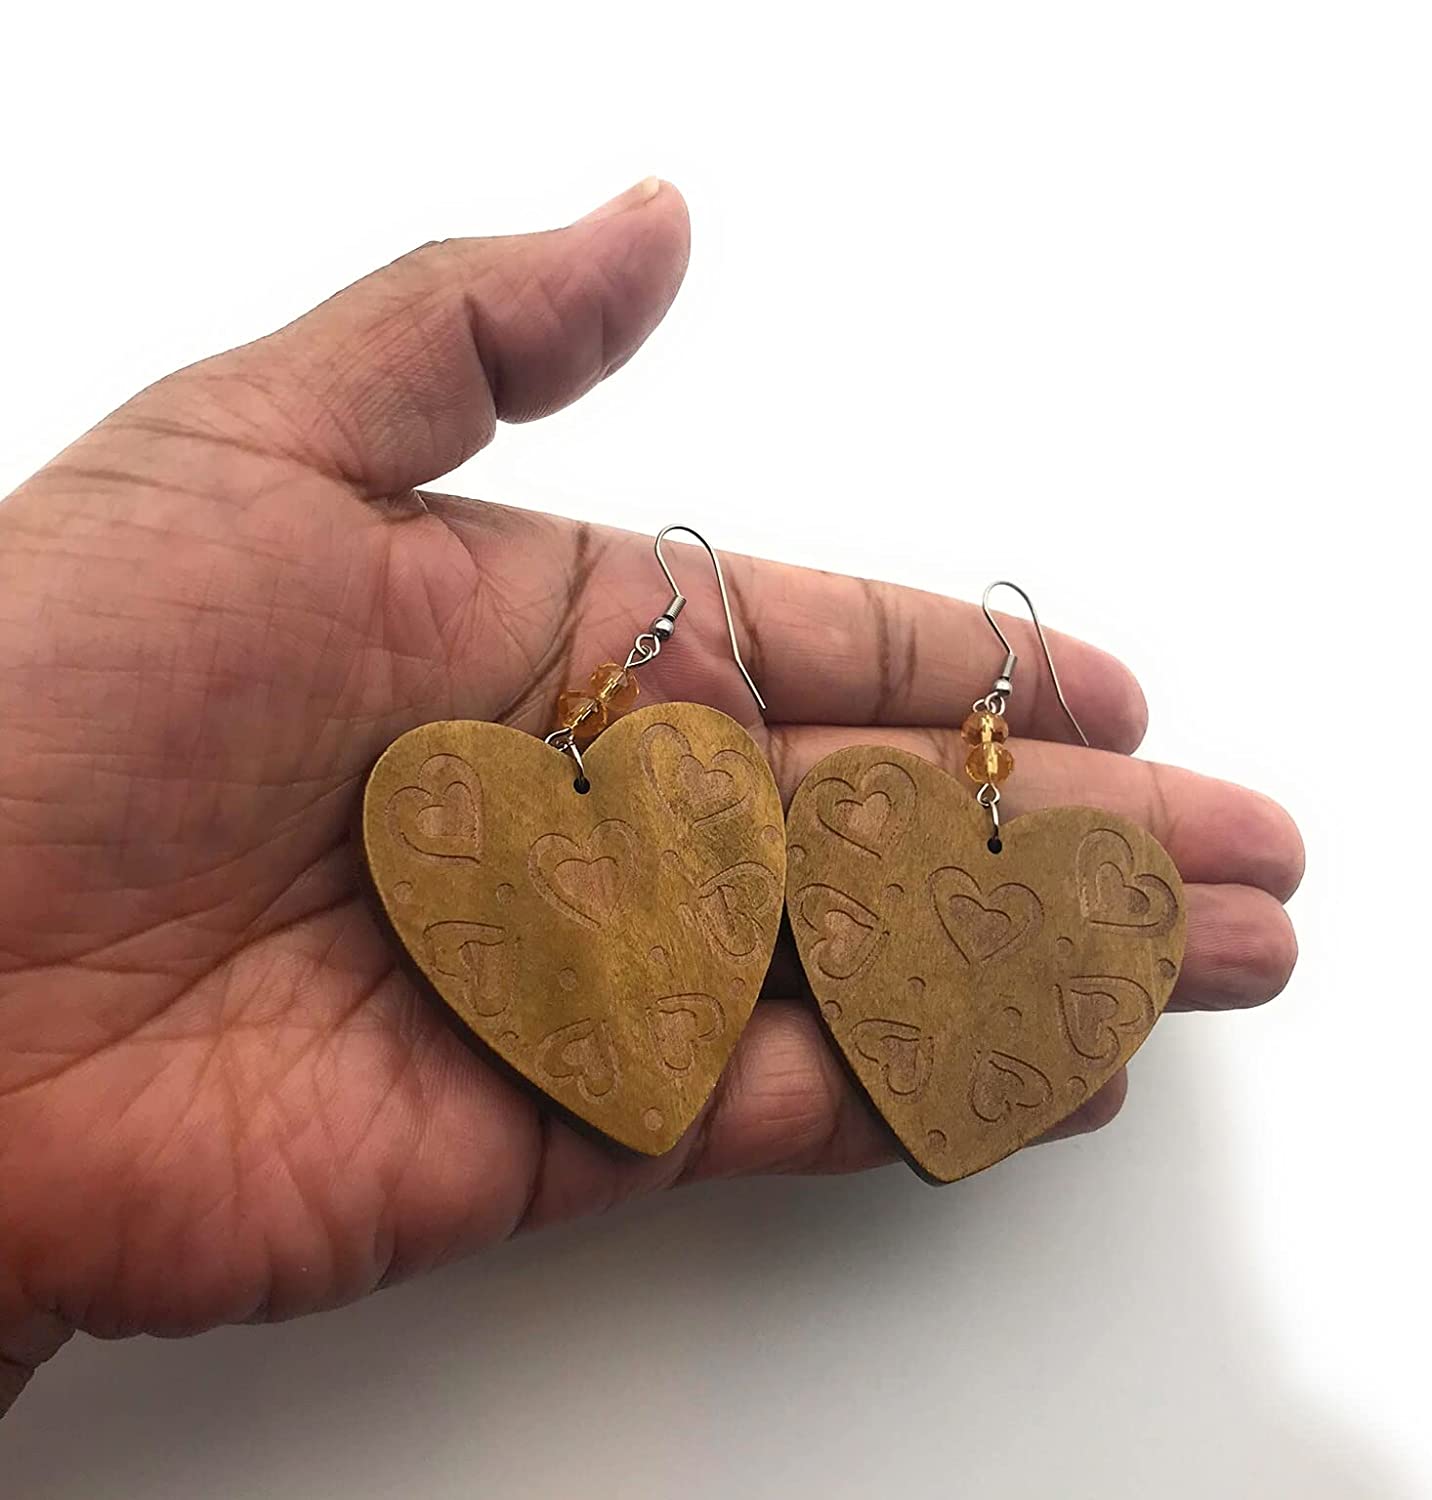 Wood Heart Swirl Pattern Earrings in Palm of Hand from Scott D Jewelry Designs